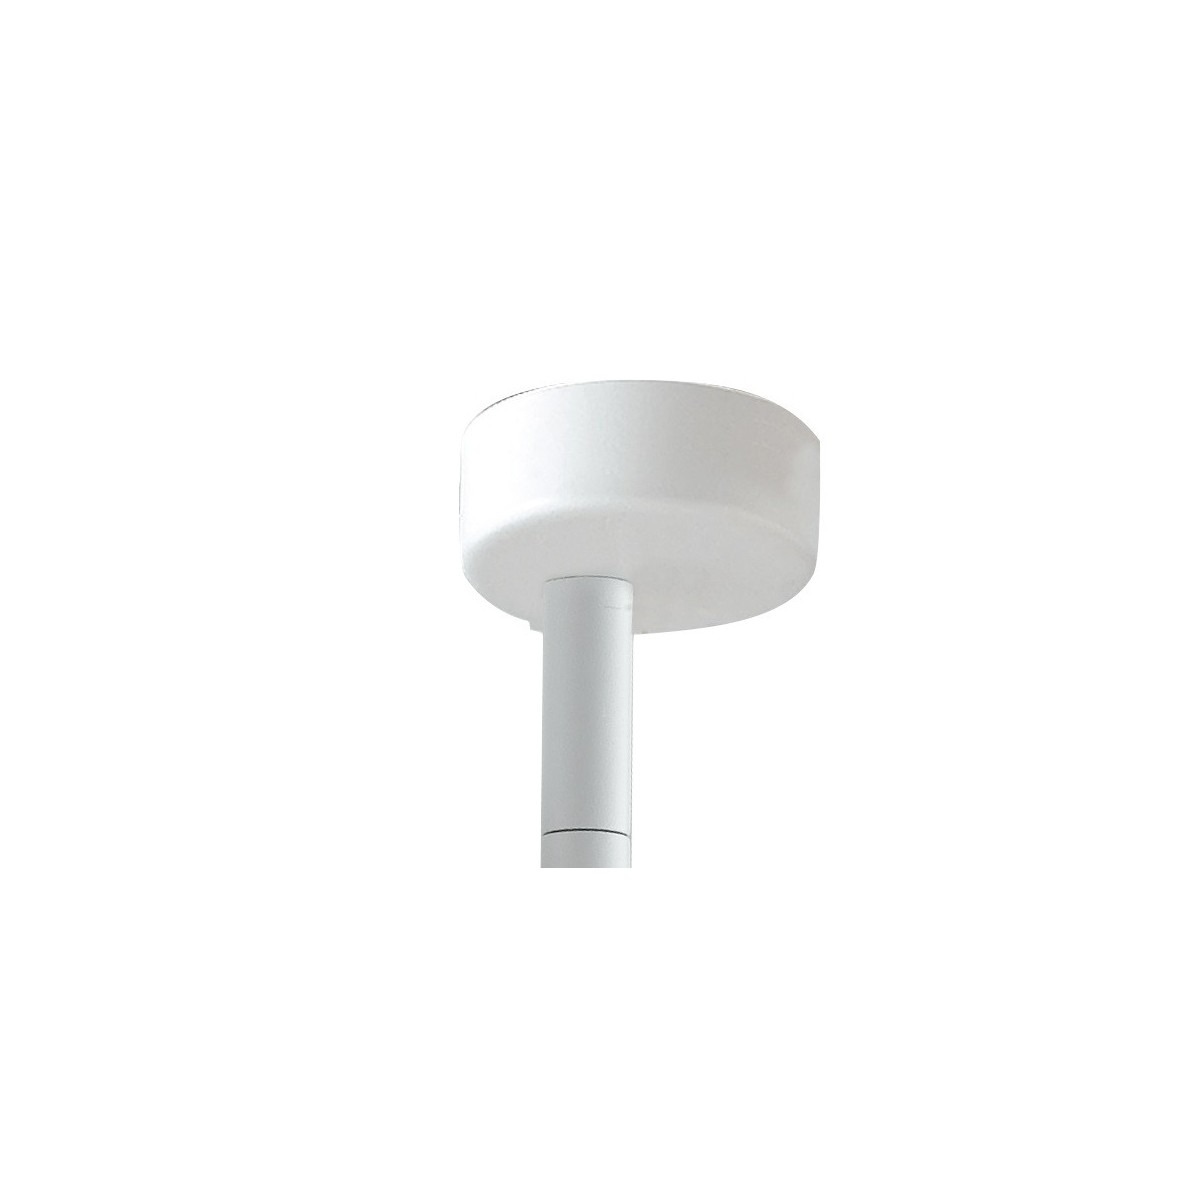 Verstellbarer LED-Deckenstrahler aus weißem Aluminium, integrierte COB-LED A+, natürliches Licht K 7 W